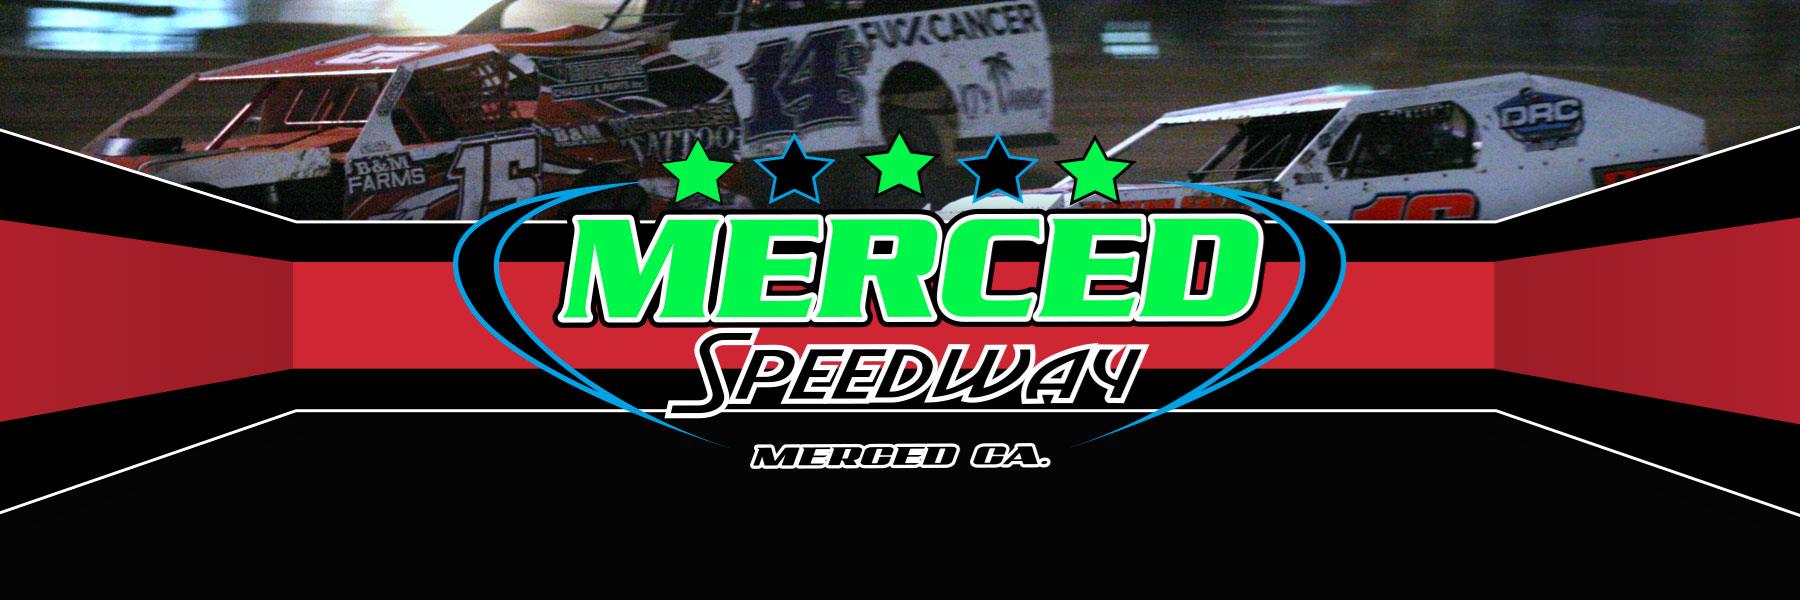 8/26/2021 - Merced Speedway